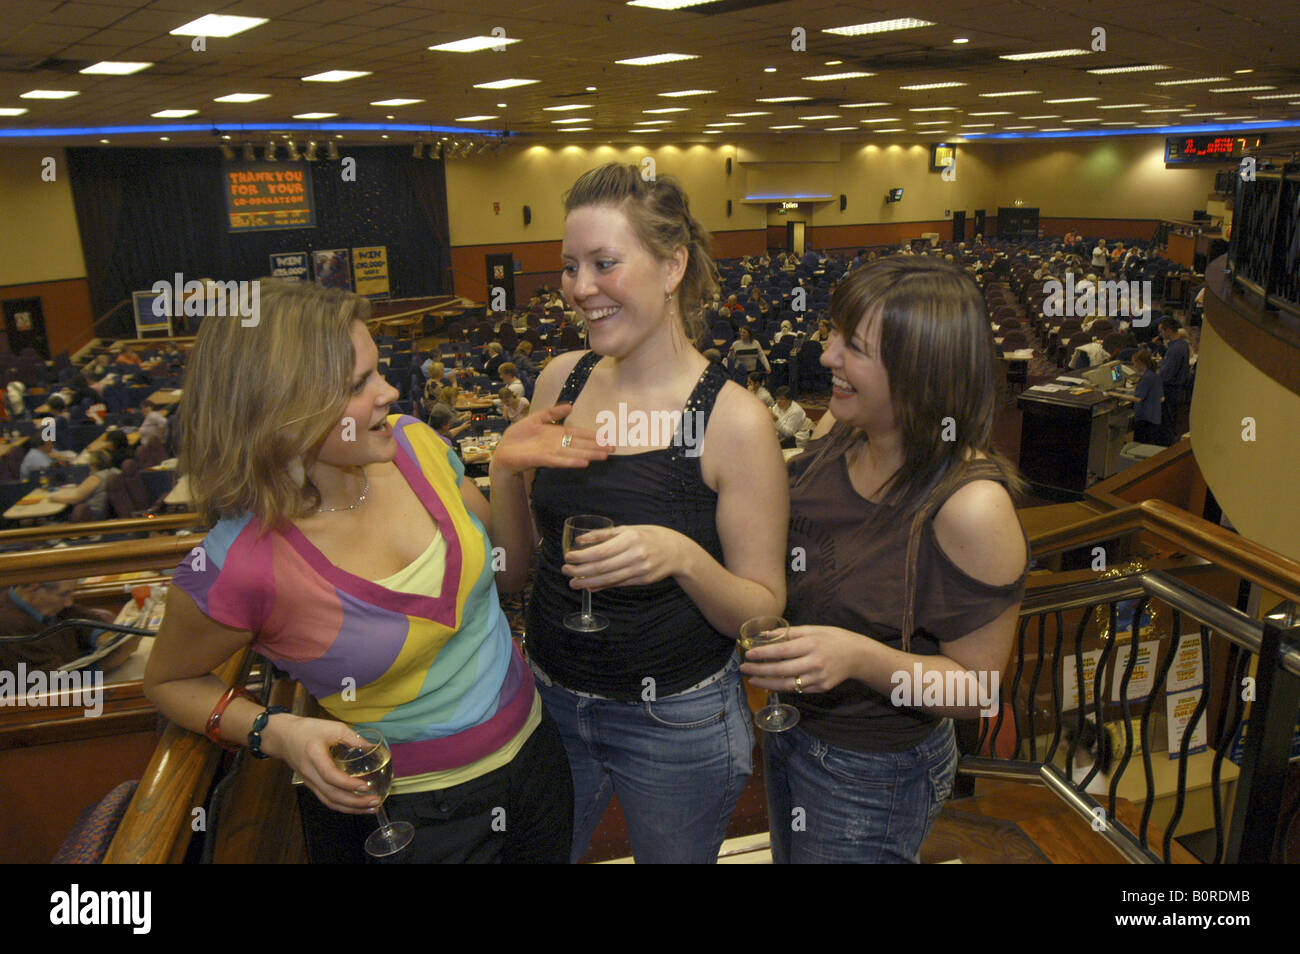 Giovani donne godendo di una notte fuori al bingo NEL REGNO UNITO Foto Stock